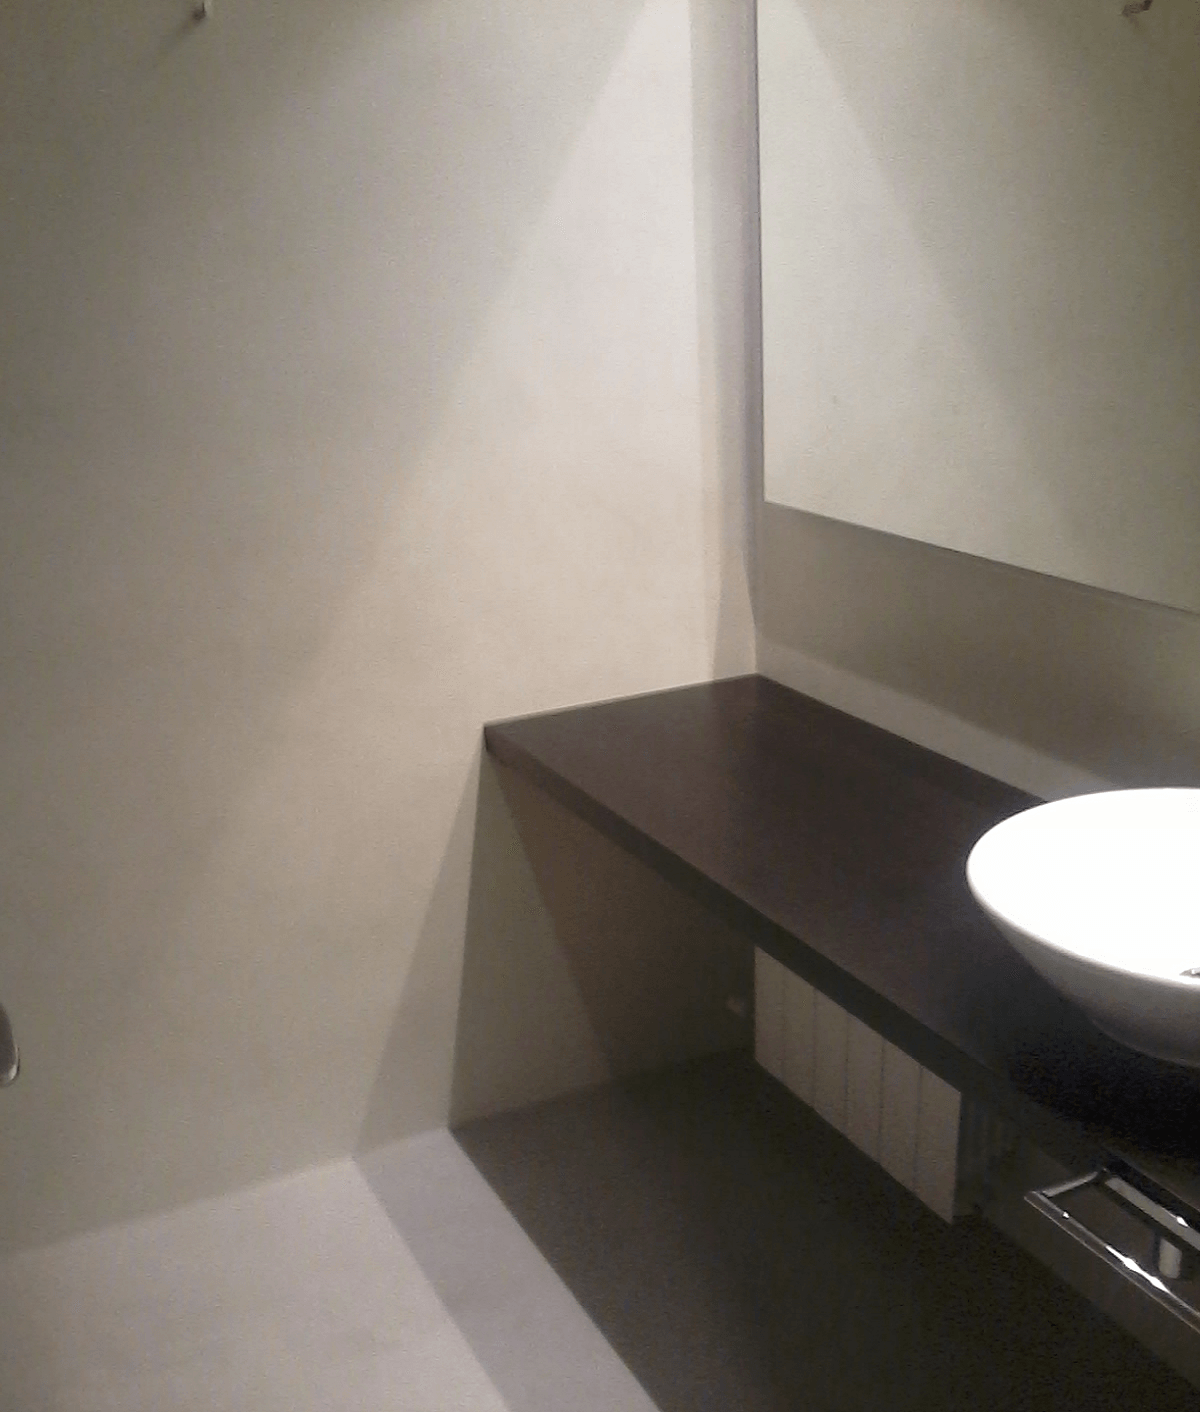 sueloas y paredes en baño de microcemento